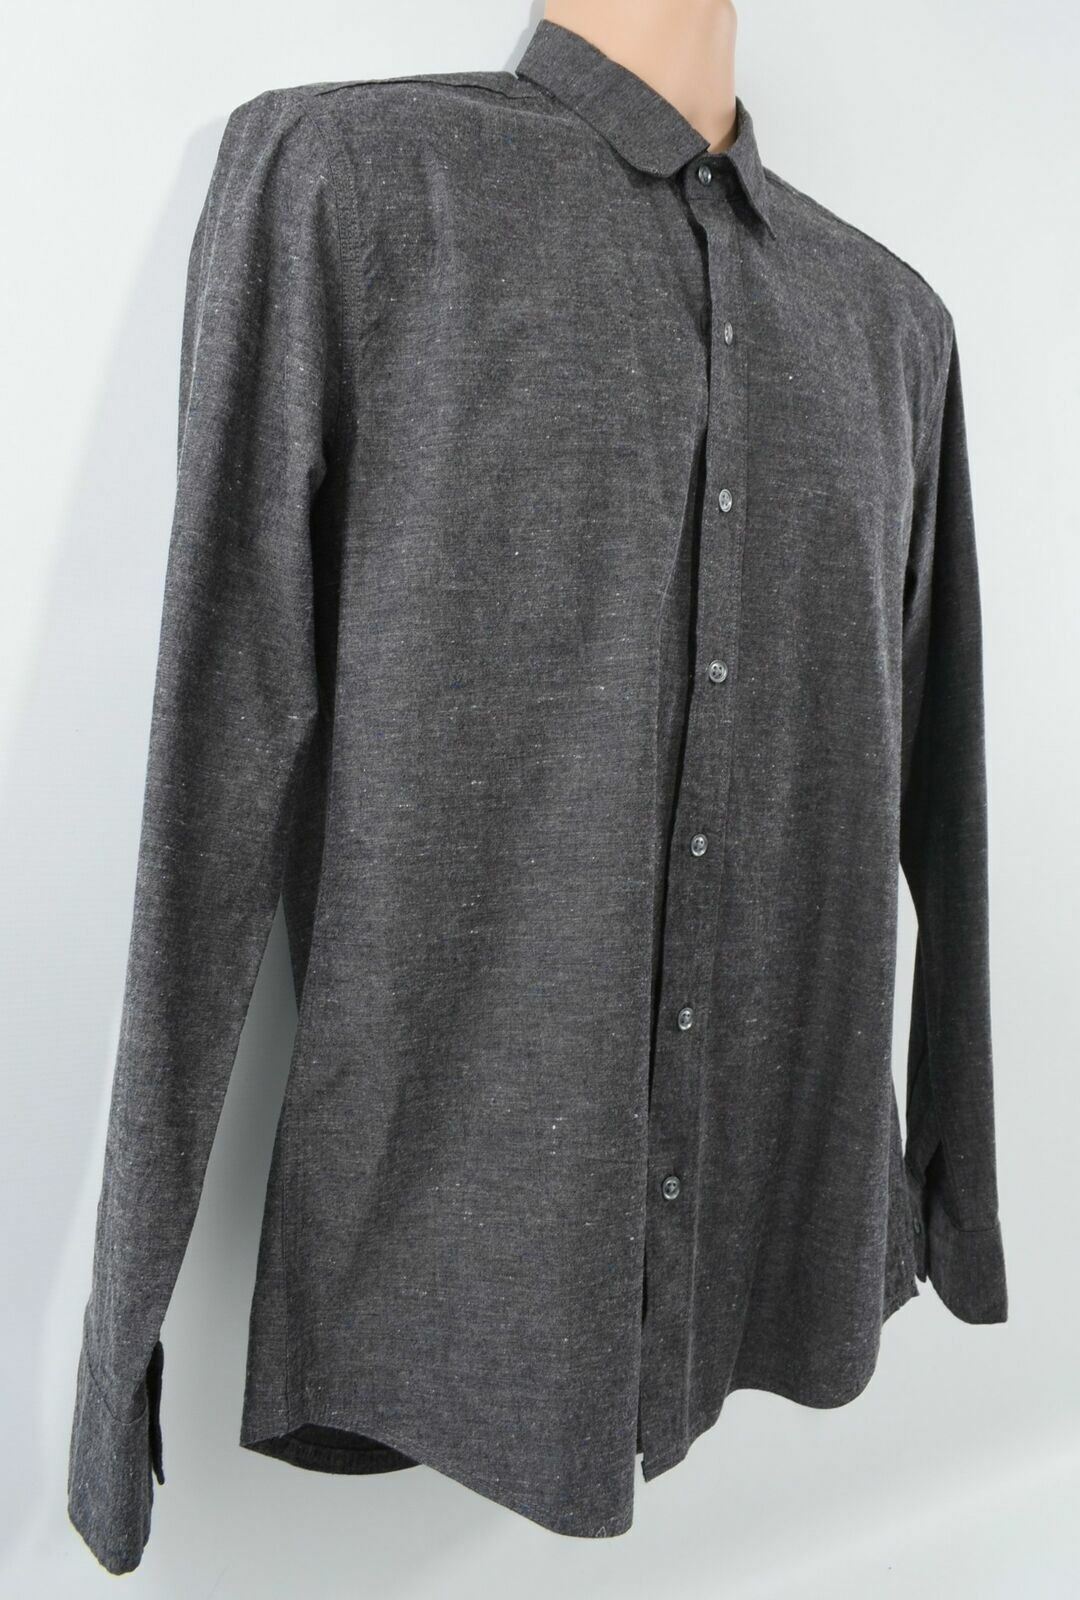 WRK MATERIALS Men's Grey Cotton Long Sleeved Shirt Size M